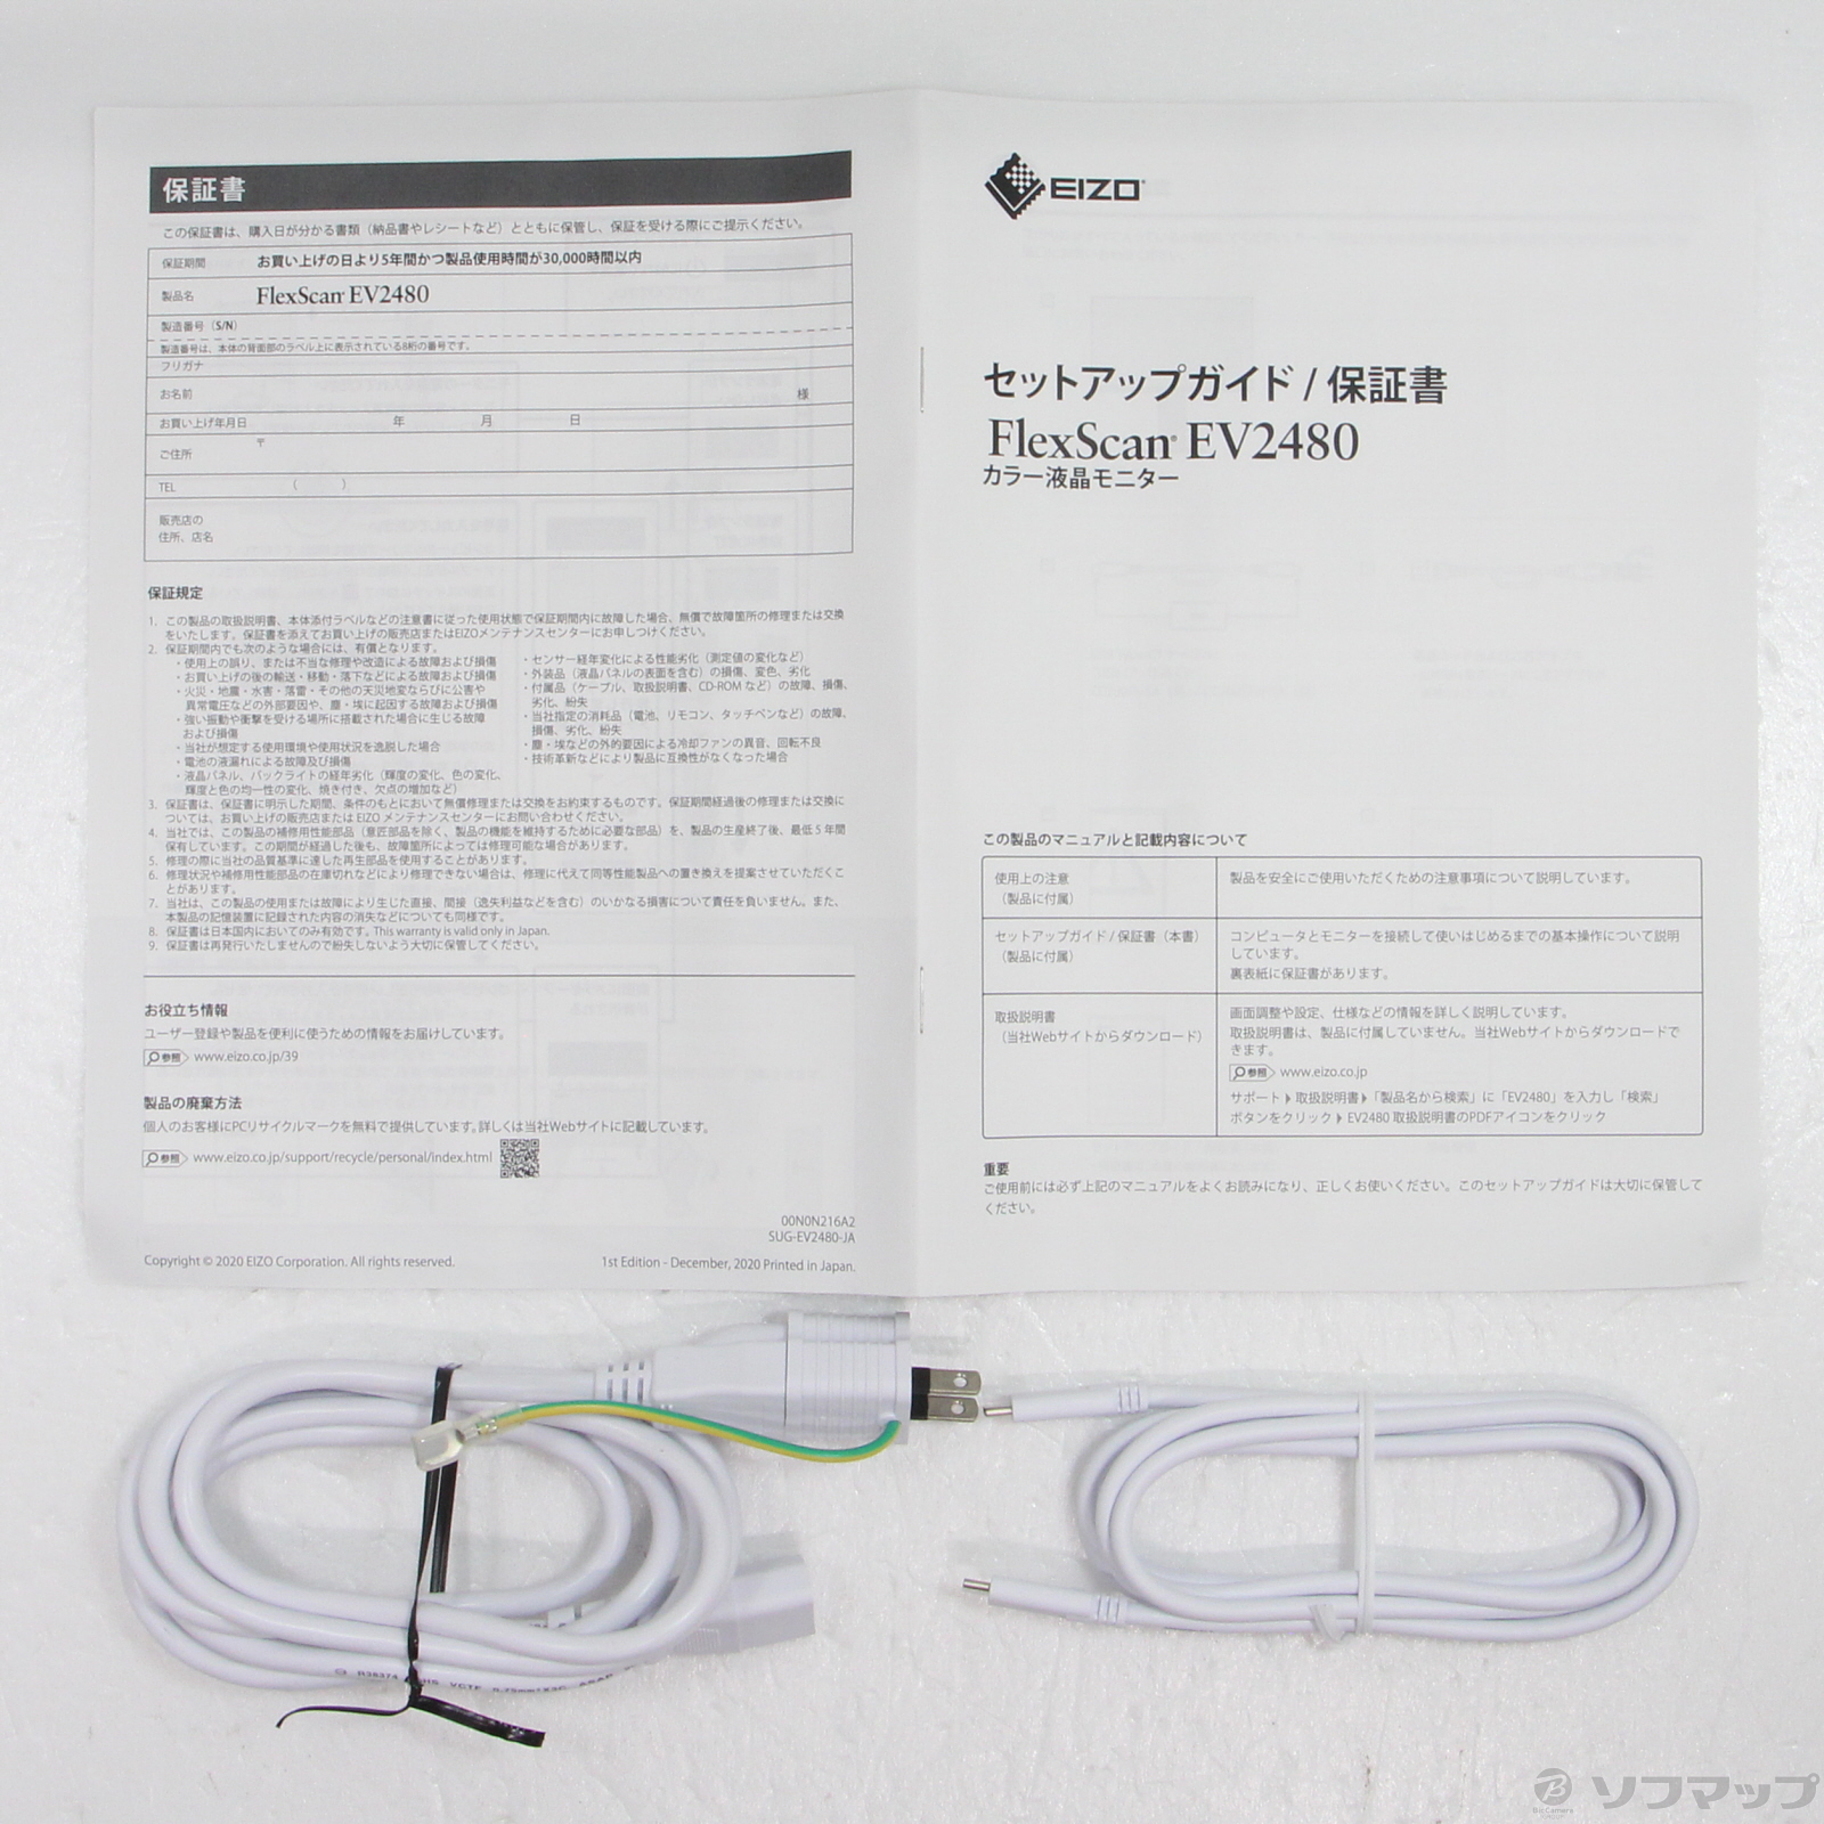 日本未発売 EIZO エイゾー 〔展示品〕 FlexScan EV2480-WT ホワイト 新 